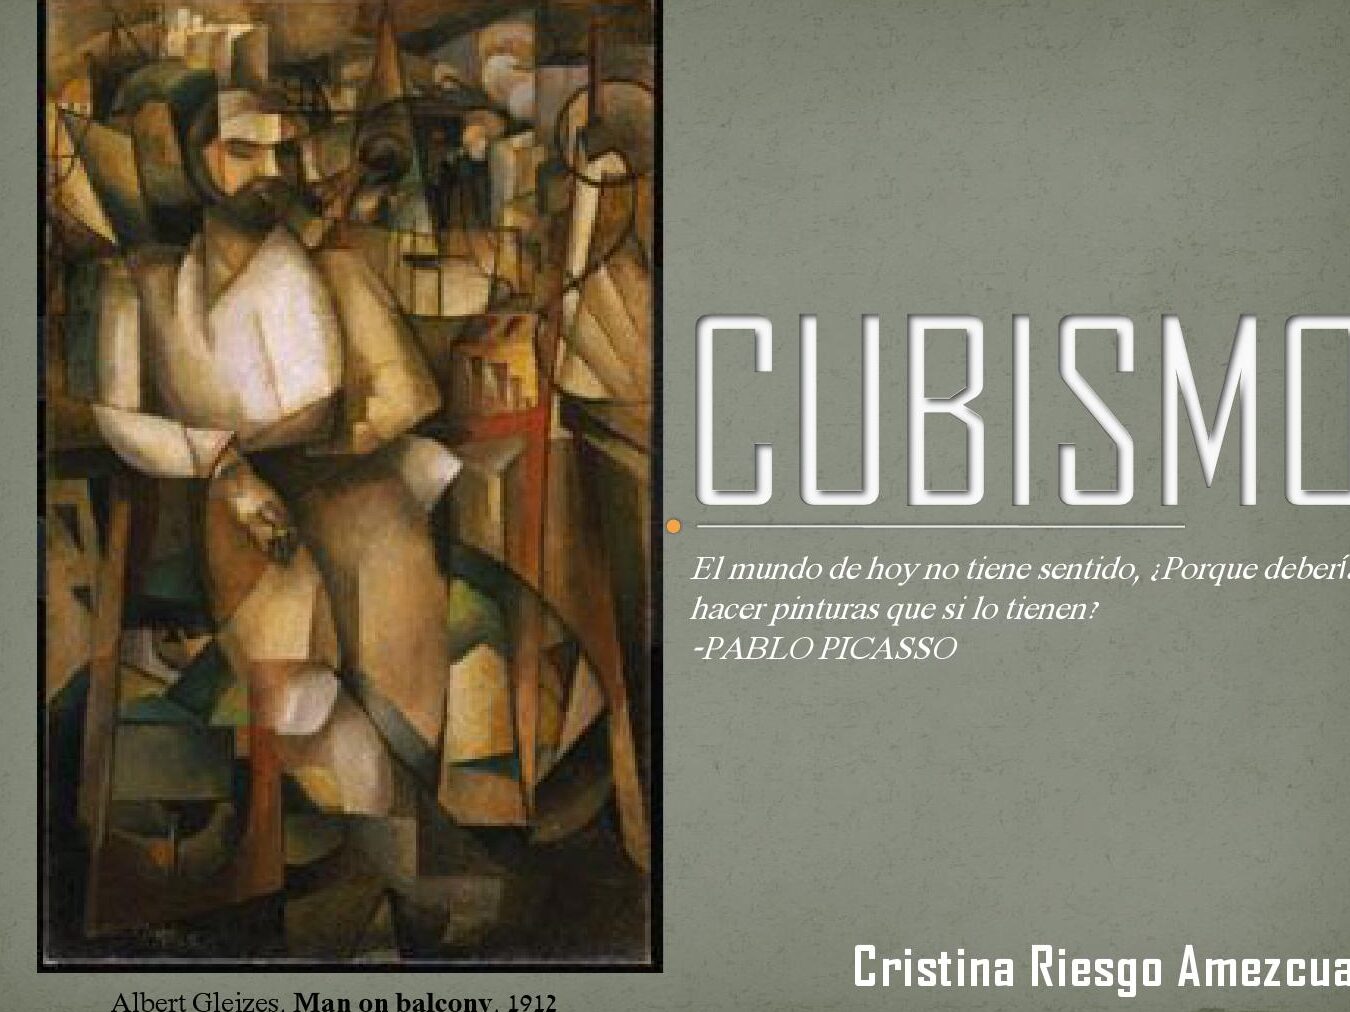 Poemas del cubismo: Vanguardia artística en la poesía del siglo XX